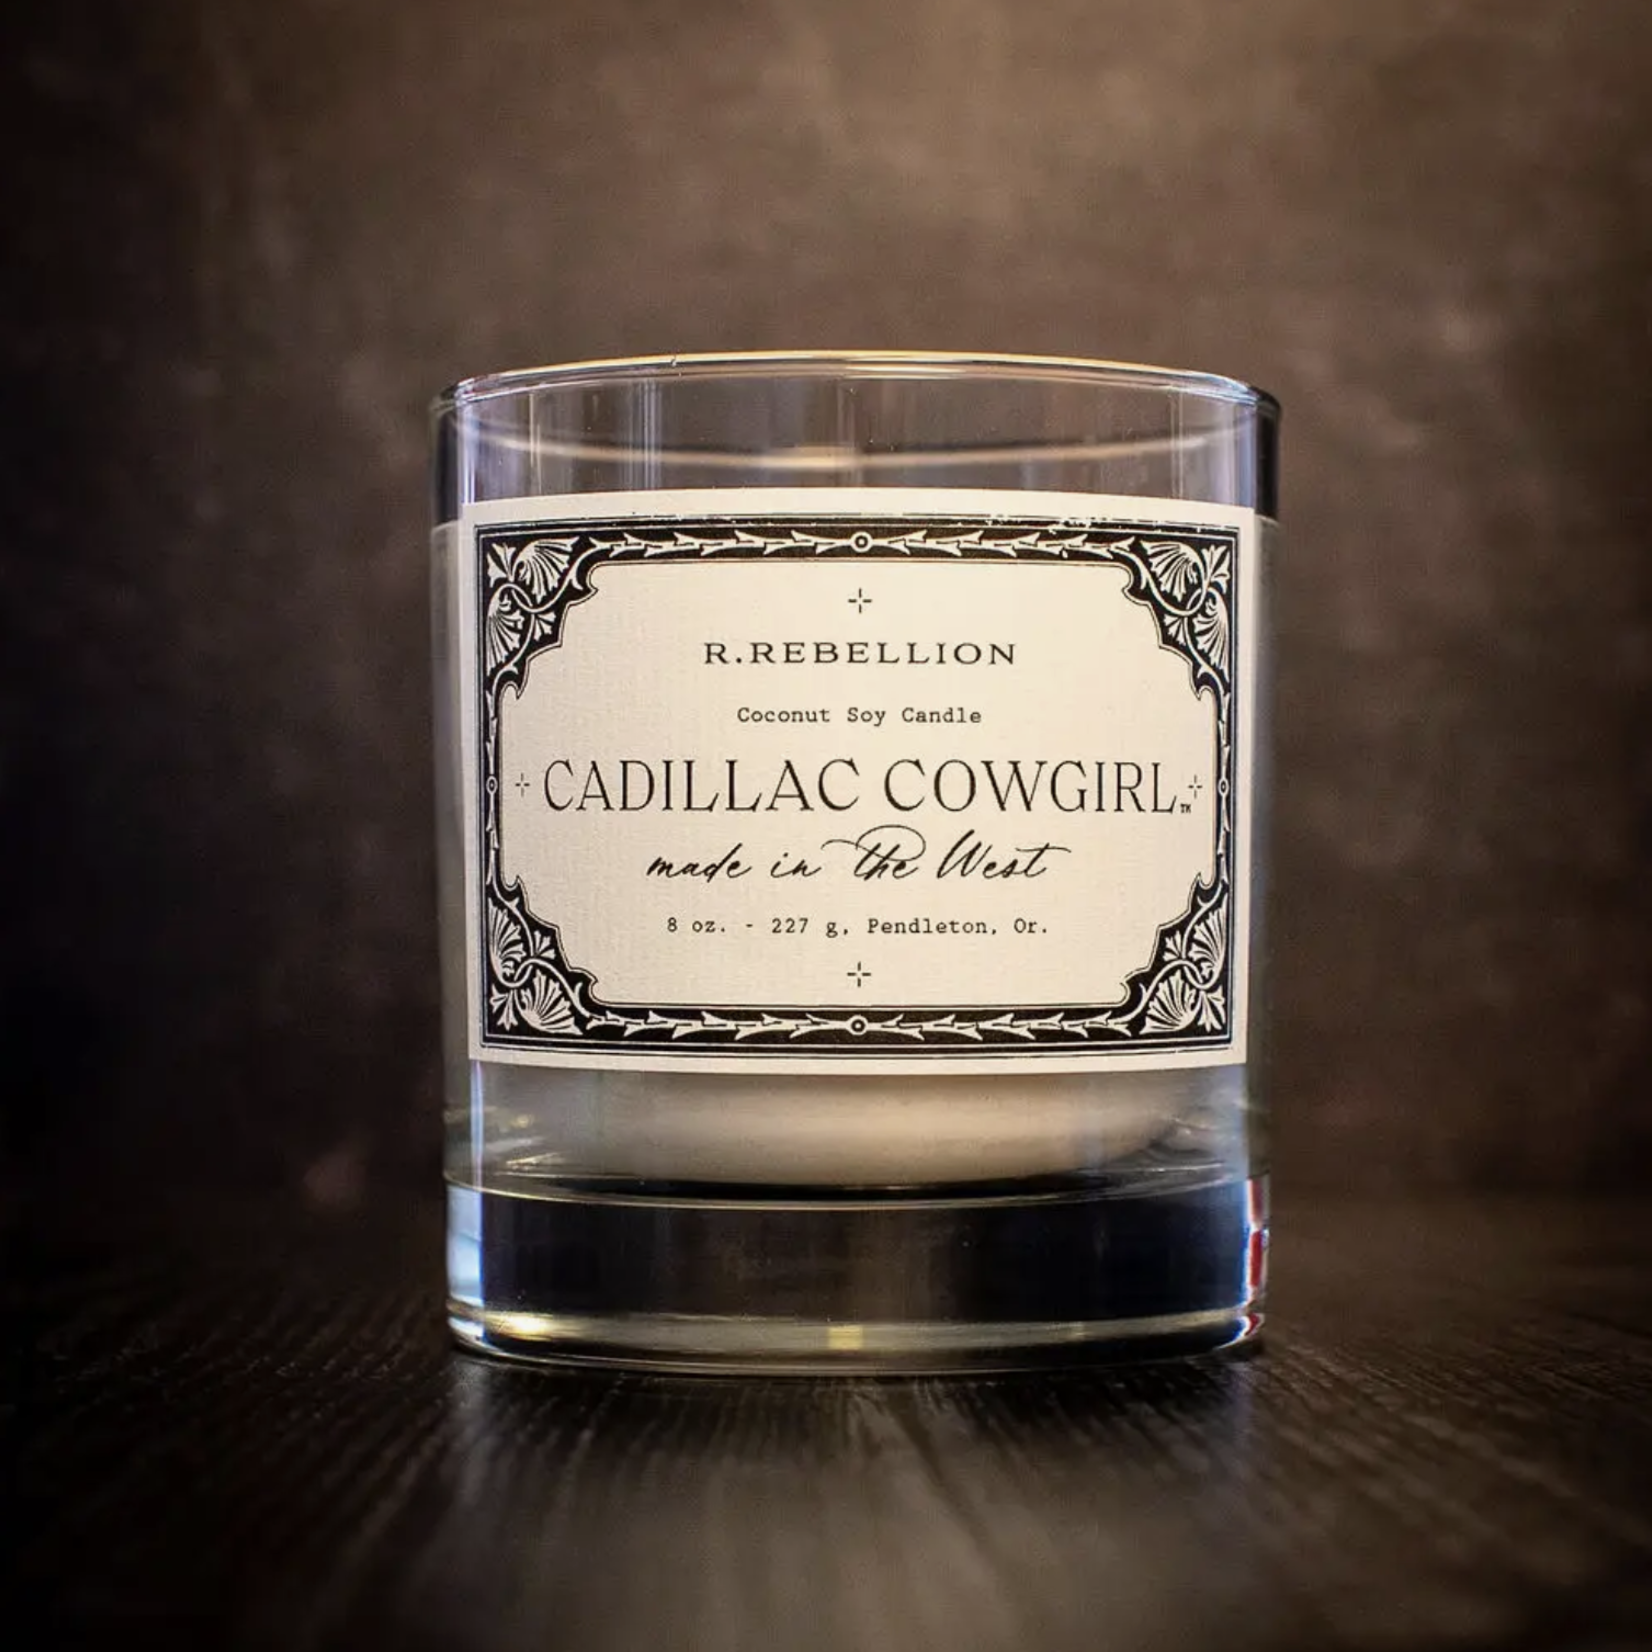 R. Rebellion Cadillac Cowgirl Candle 8 oz.